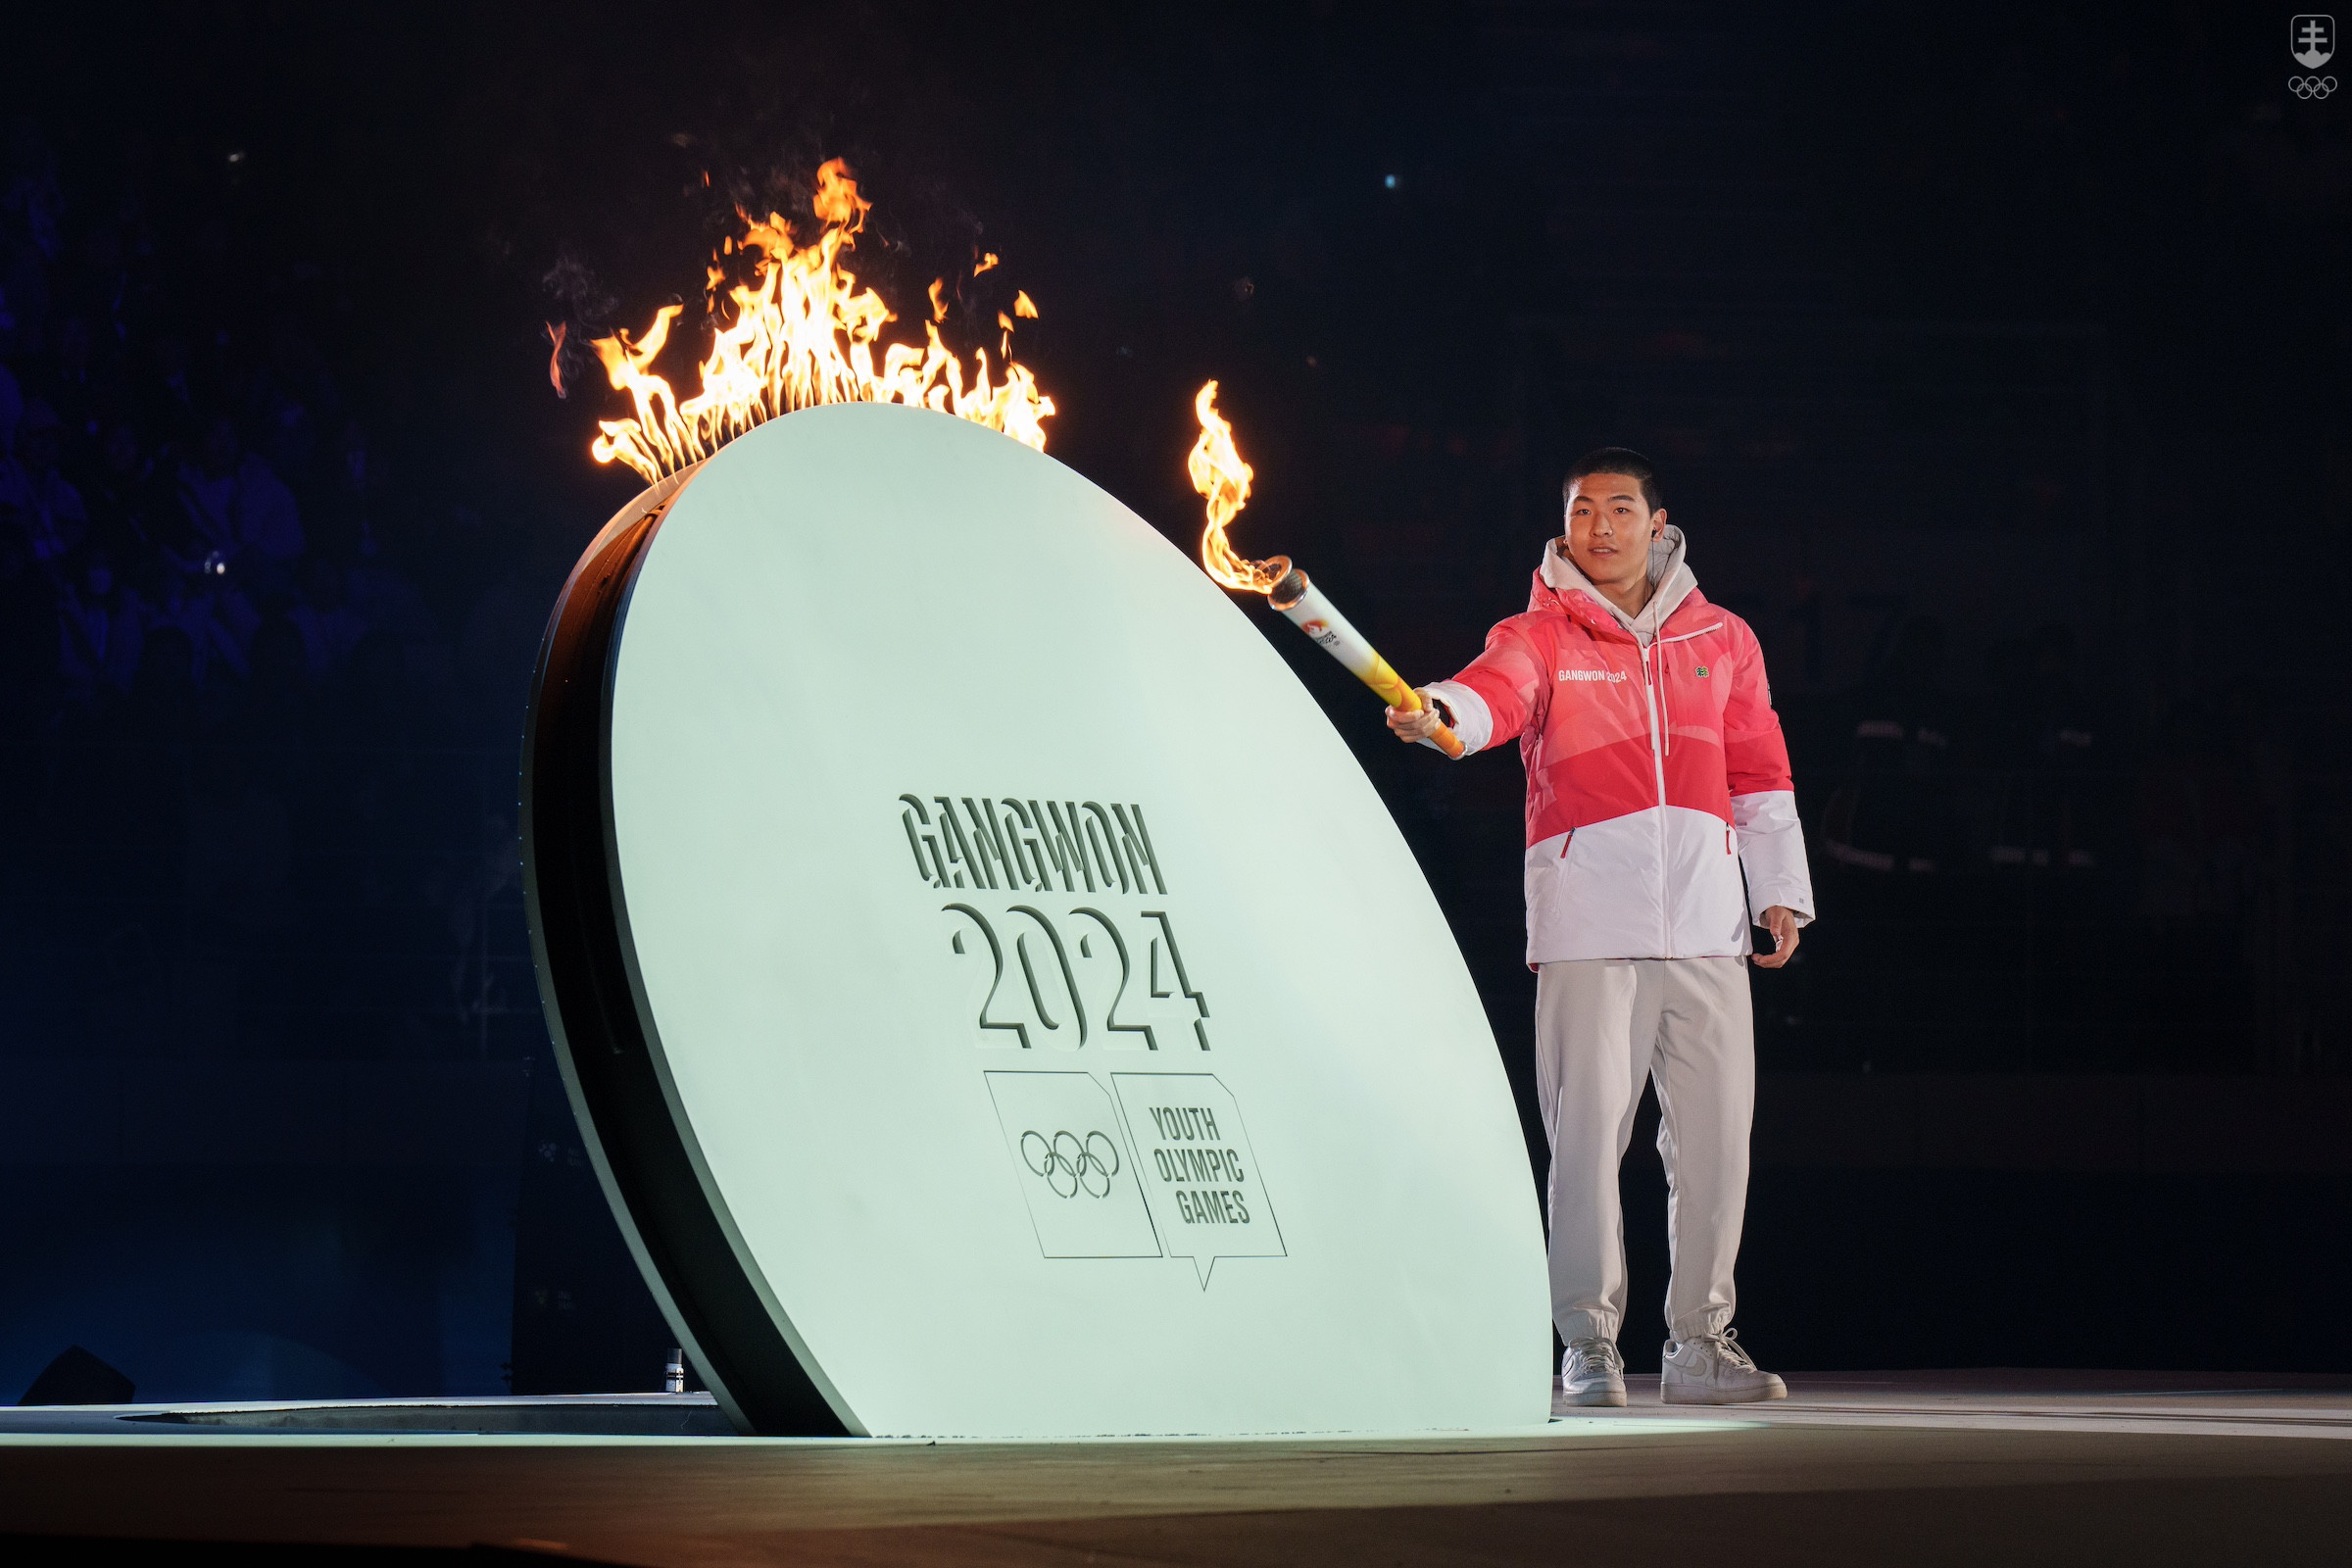 Krátko po 21.00 h miestneho času zapálil olympijský oheň akrobatický lyžiar Lee Jeong-min, ktorý bude súťažiť v Kangwone 2024 a reprezentuje budúce olympijské hviezdy.